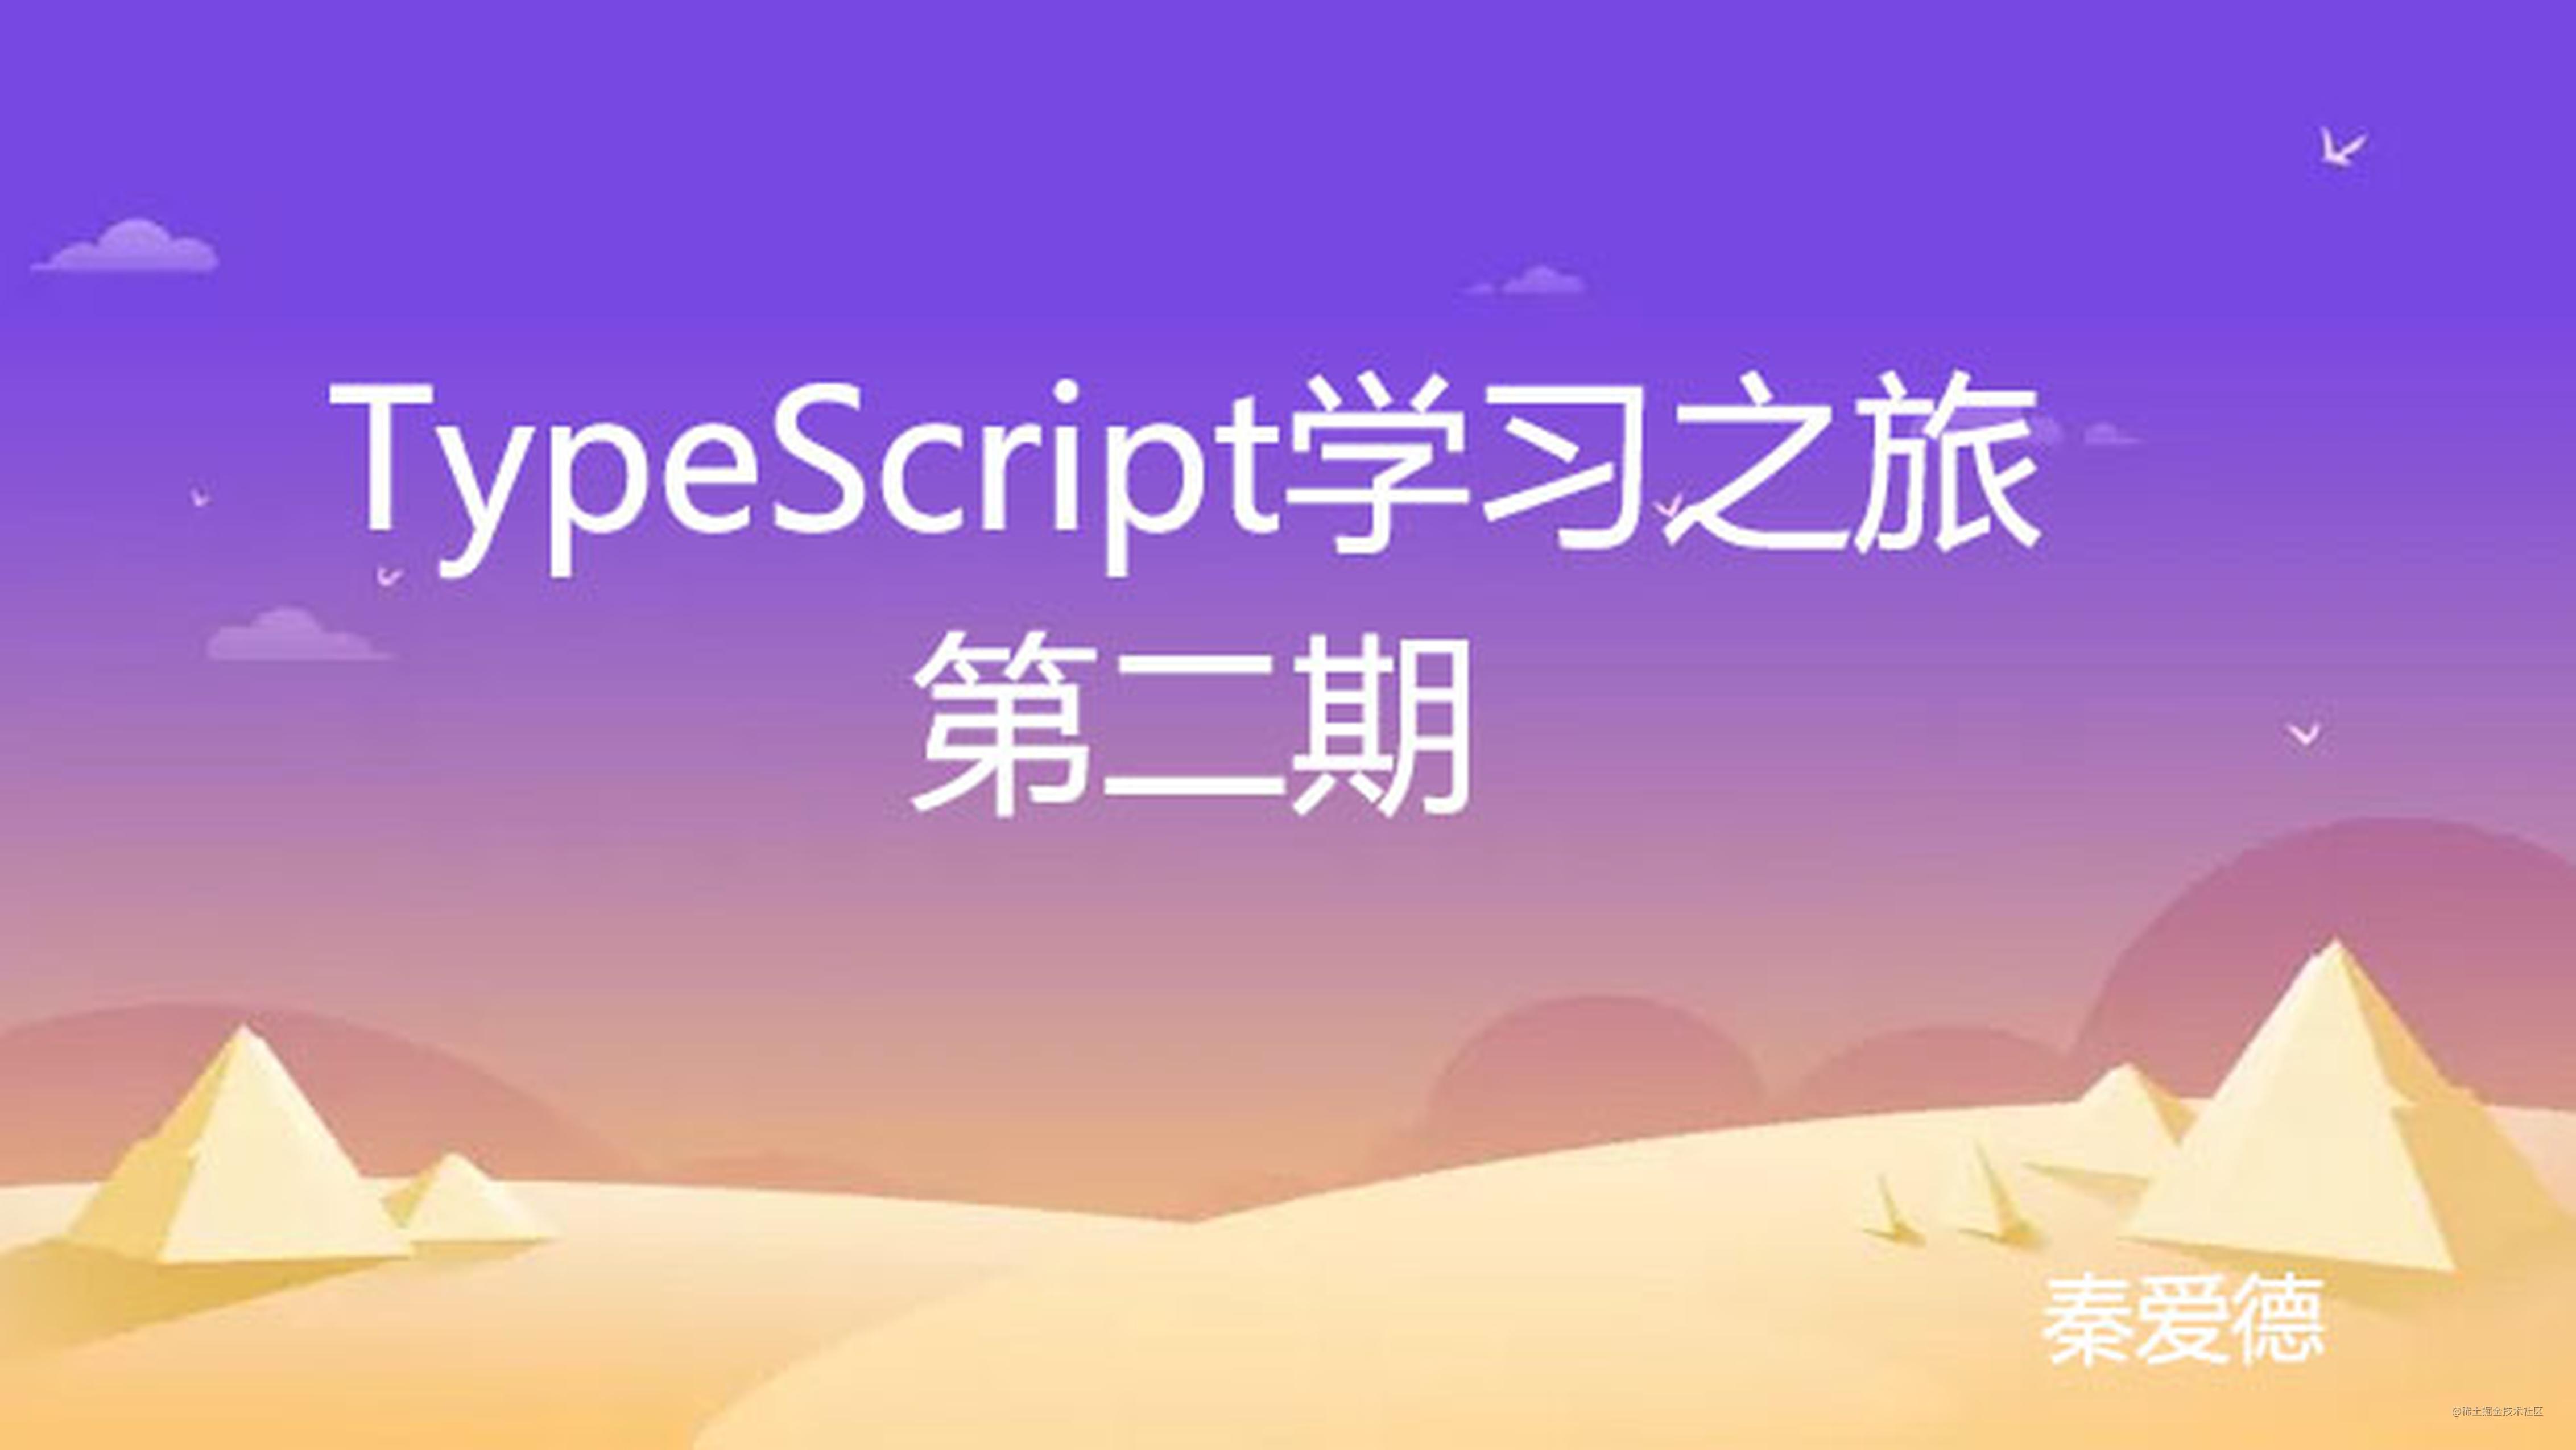 [ TypeScript连载-第二期 ] 初识-TypeScript